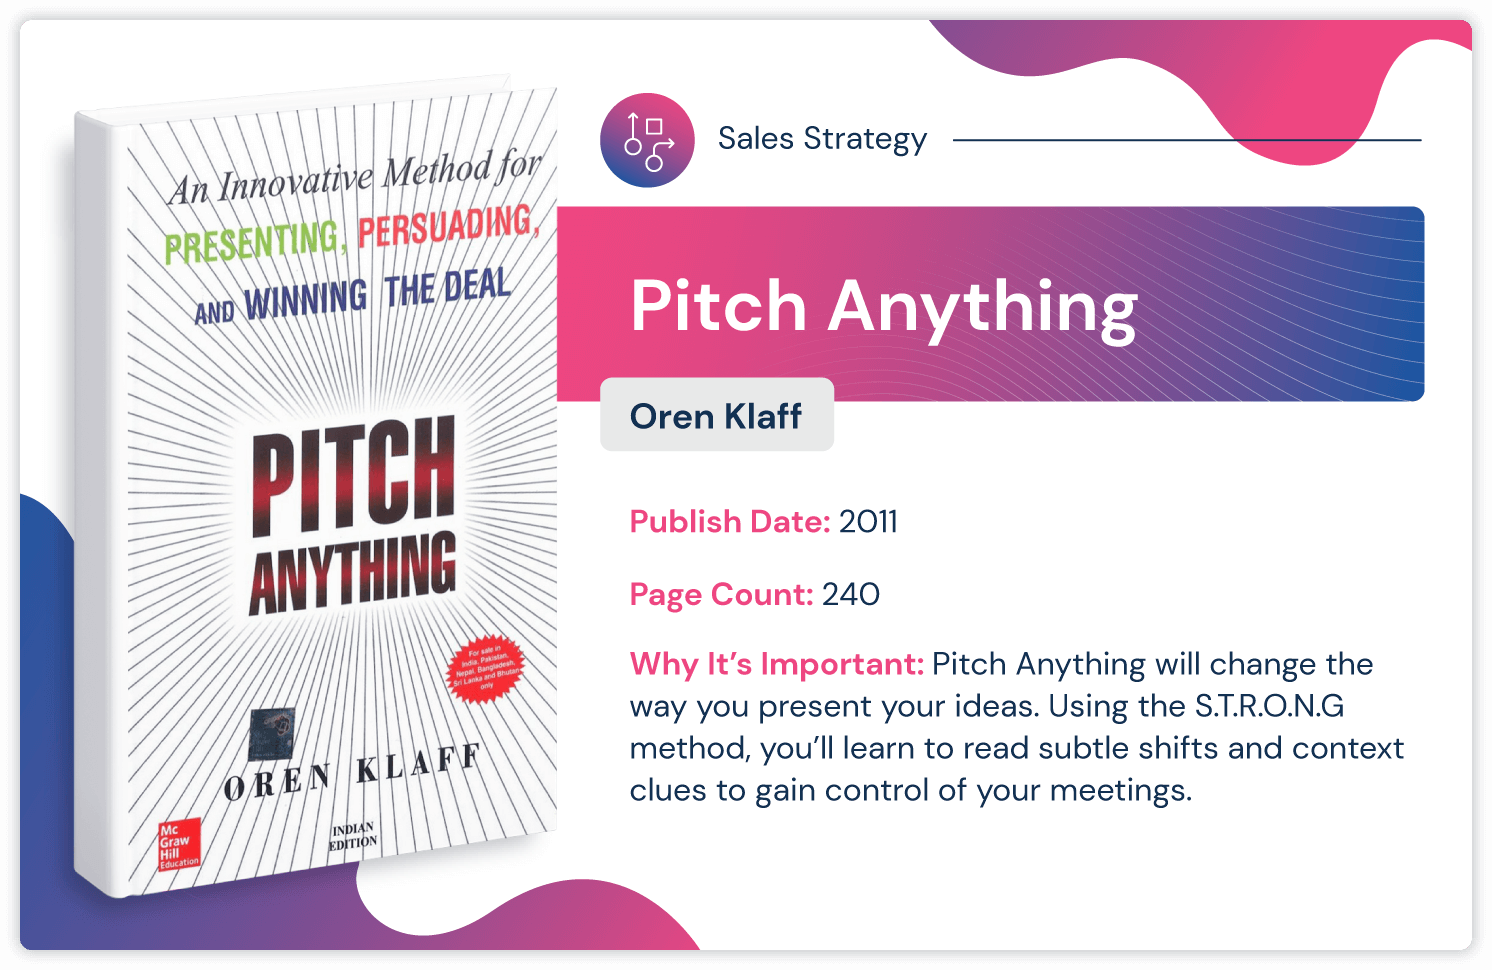 Livre de stratégie commerciale "Pitch Anything" d'Oren Klaff, publié en 2011 et de 240 pages.